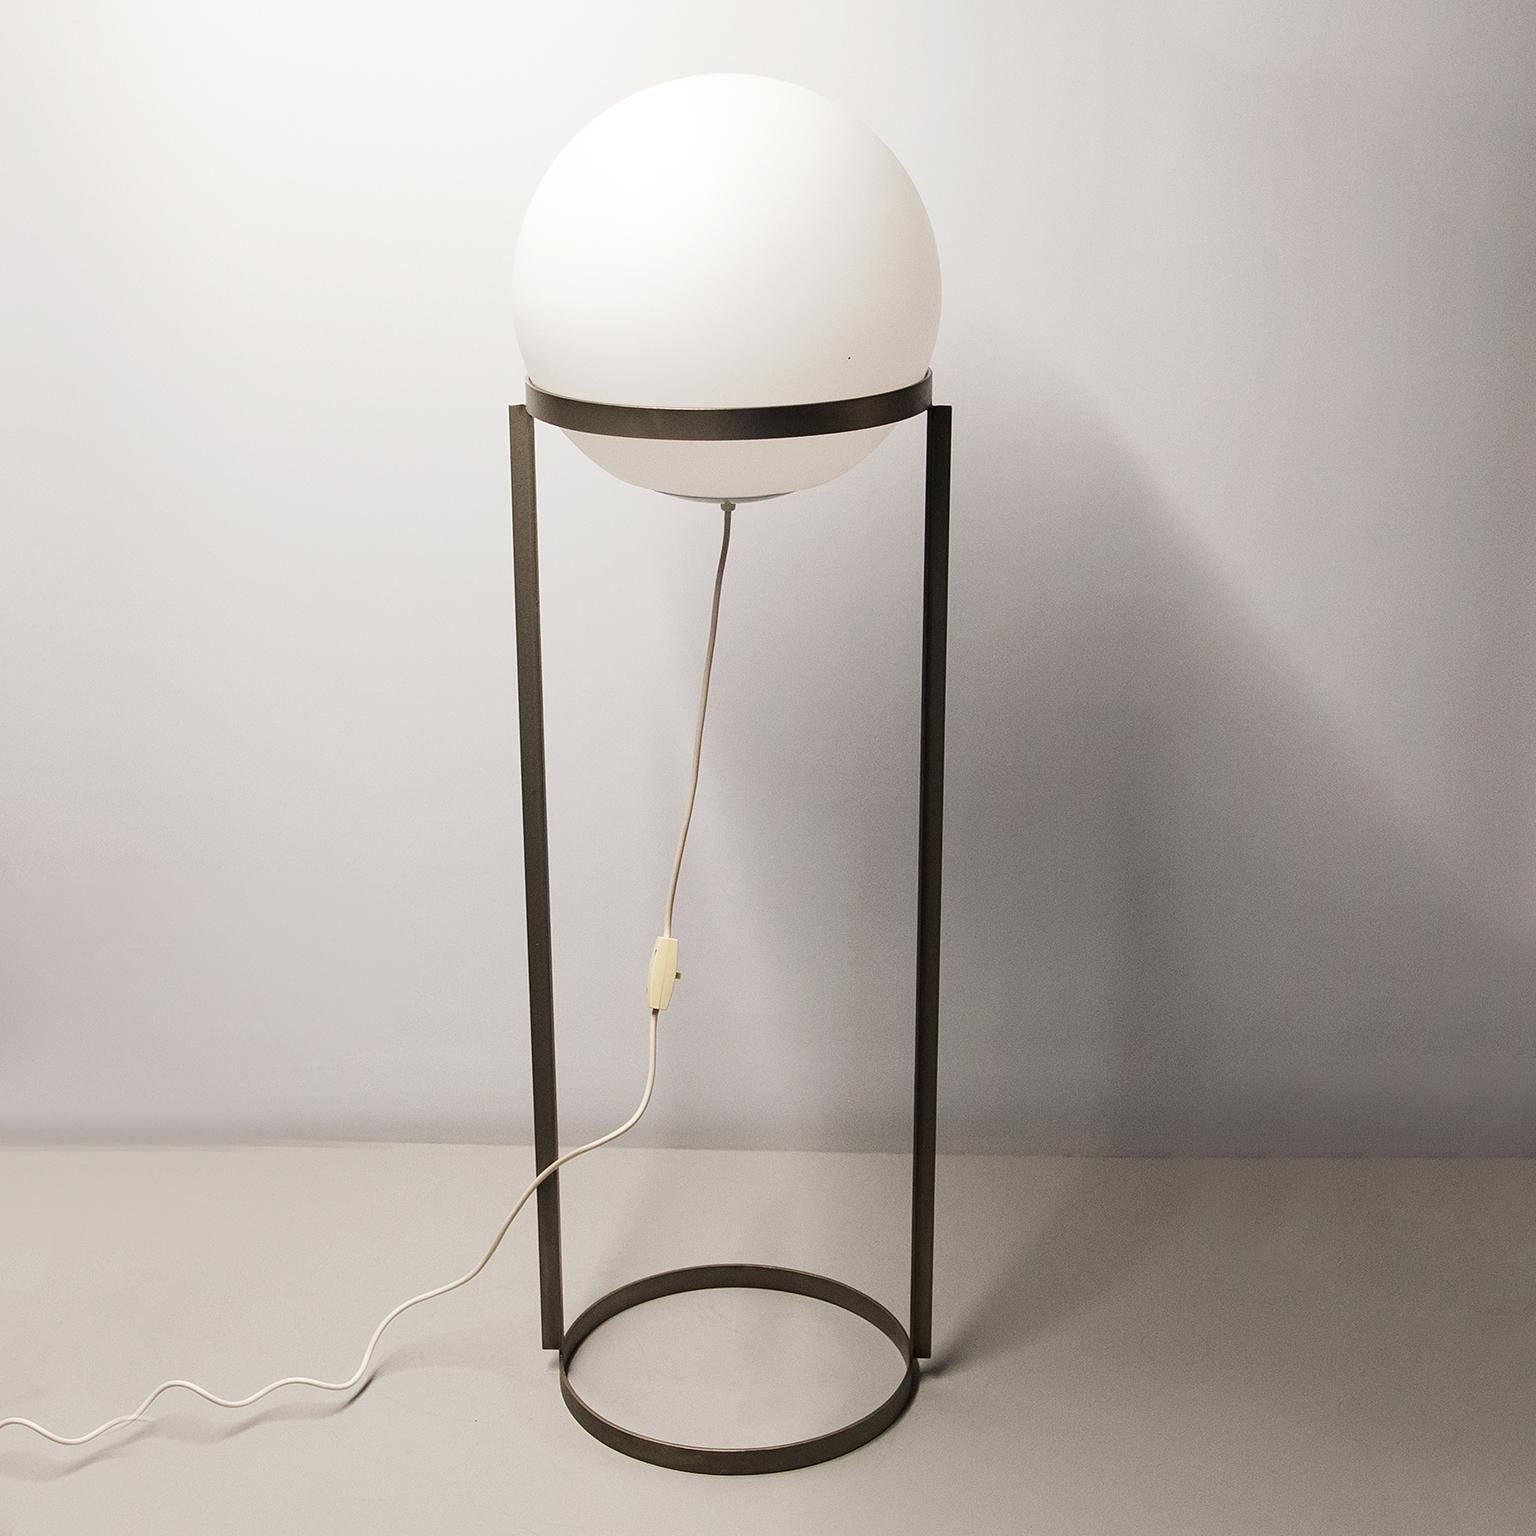 Carl Auebock a conçu et fabriqué ce rare lampadaire en 1969.
Le nom du modèle est 4095 et il s'appelle Kugelleuchte, comme lampe à boule.
Elle est composée d'un cadre en métal nickelé et d'un abat-jour en verre dépoli qui donne une très belle